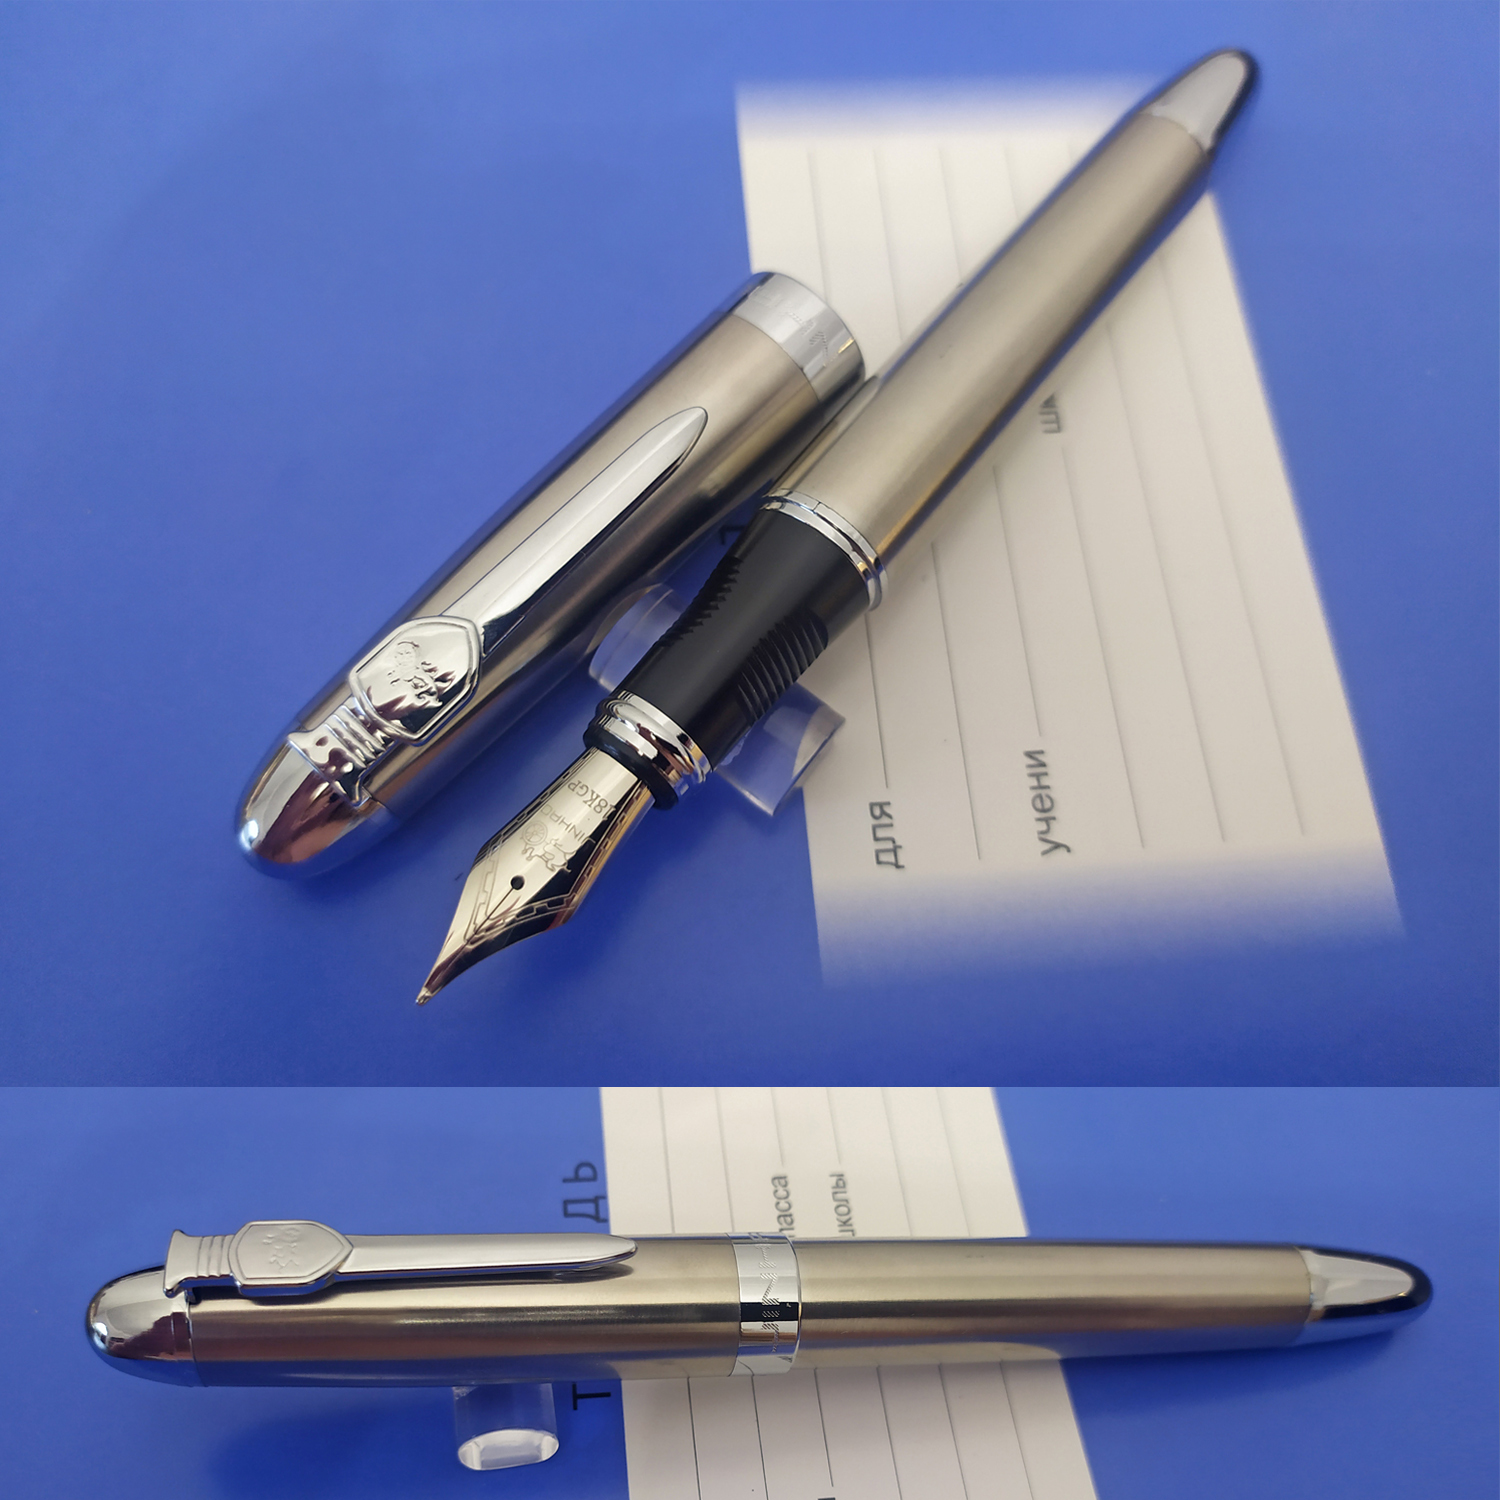 Перьевая ручка Jinhao 450А, Китай. Перо М (0.75 мм), корпус металл. Цвет серебристо-бронзовый. NEW! SALE 1500!